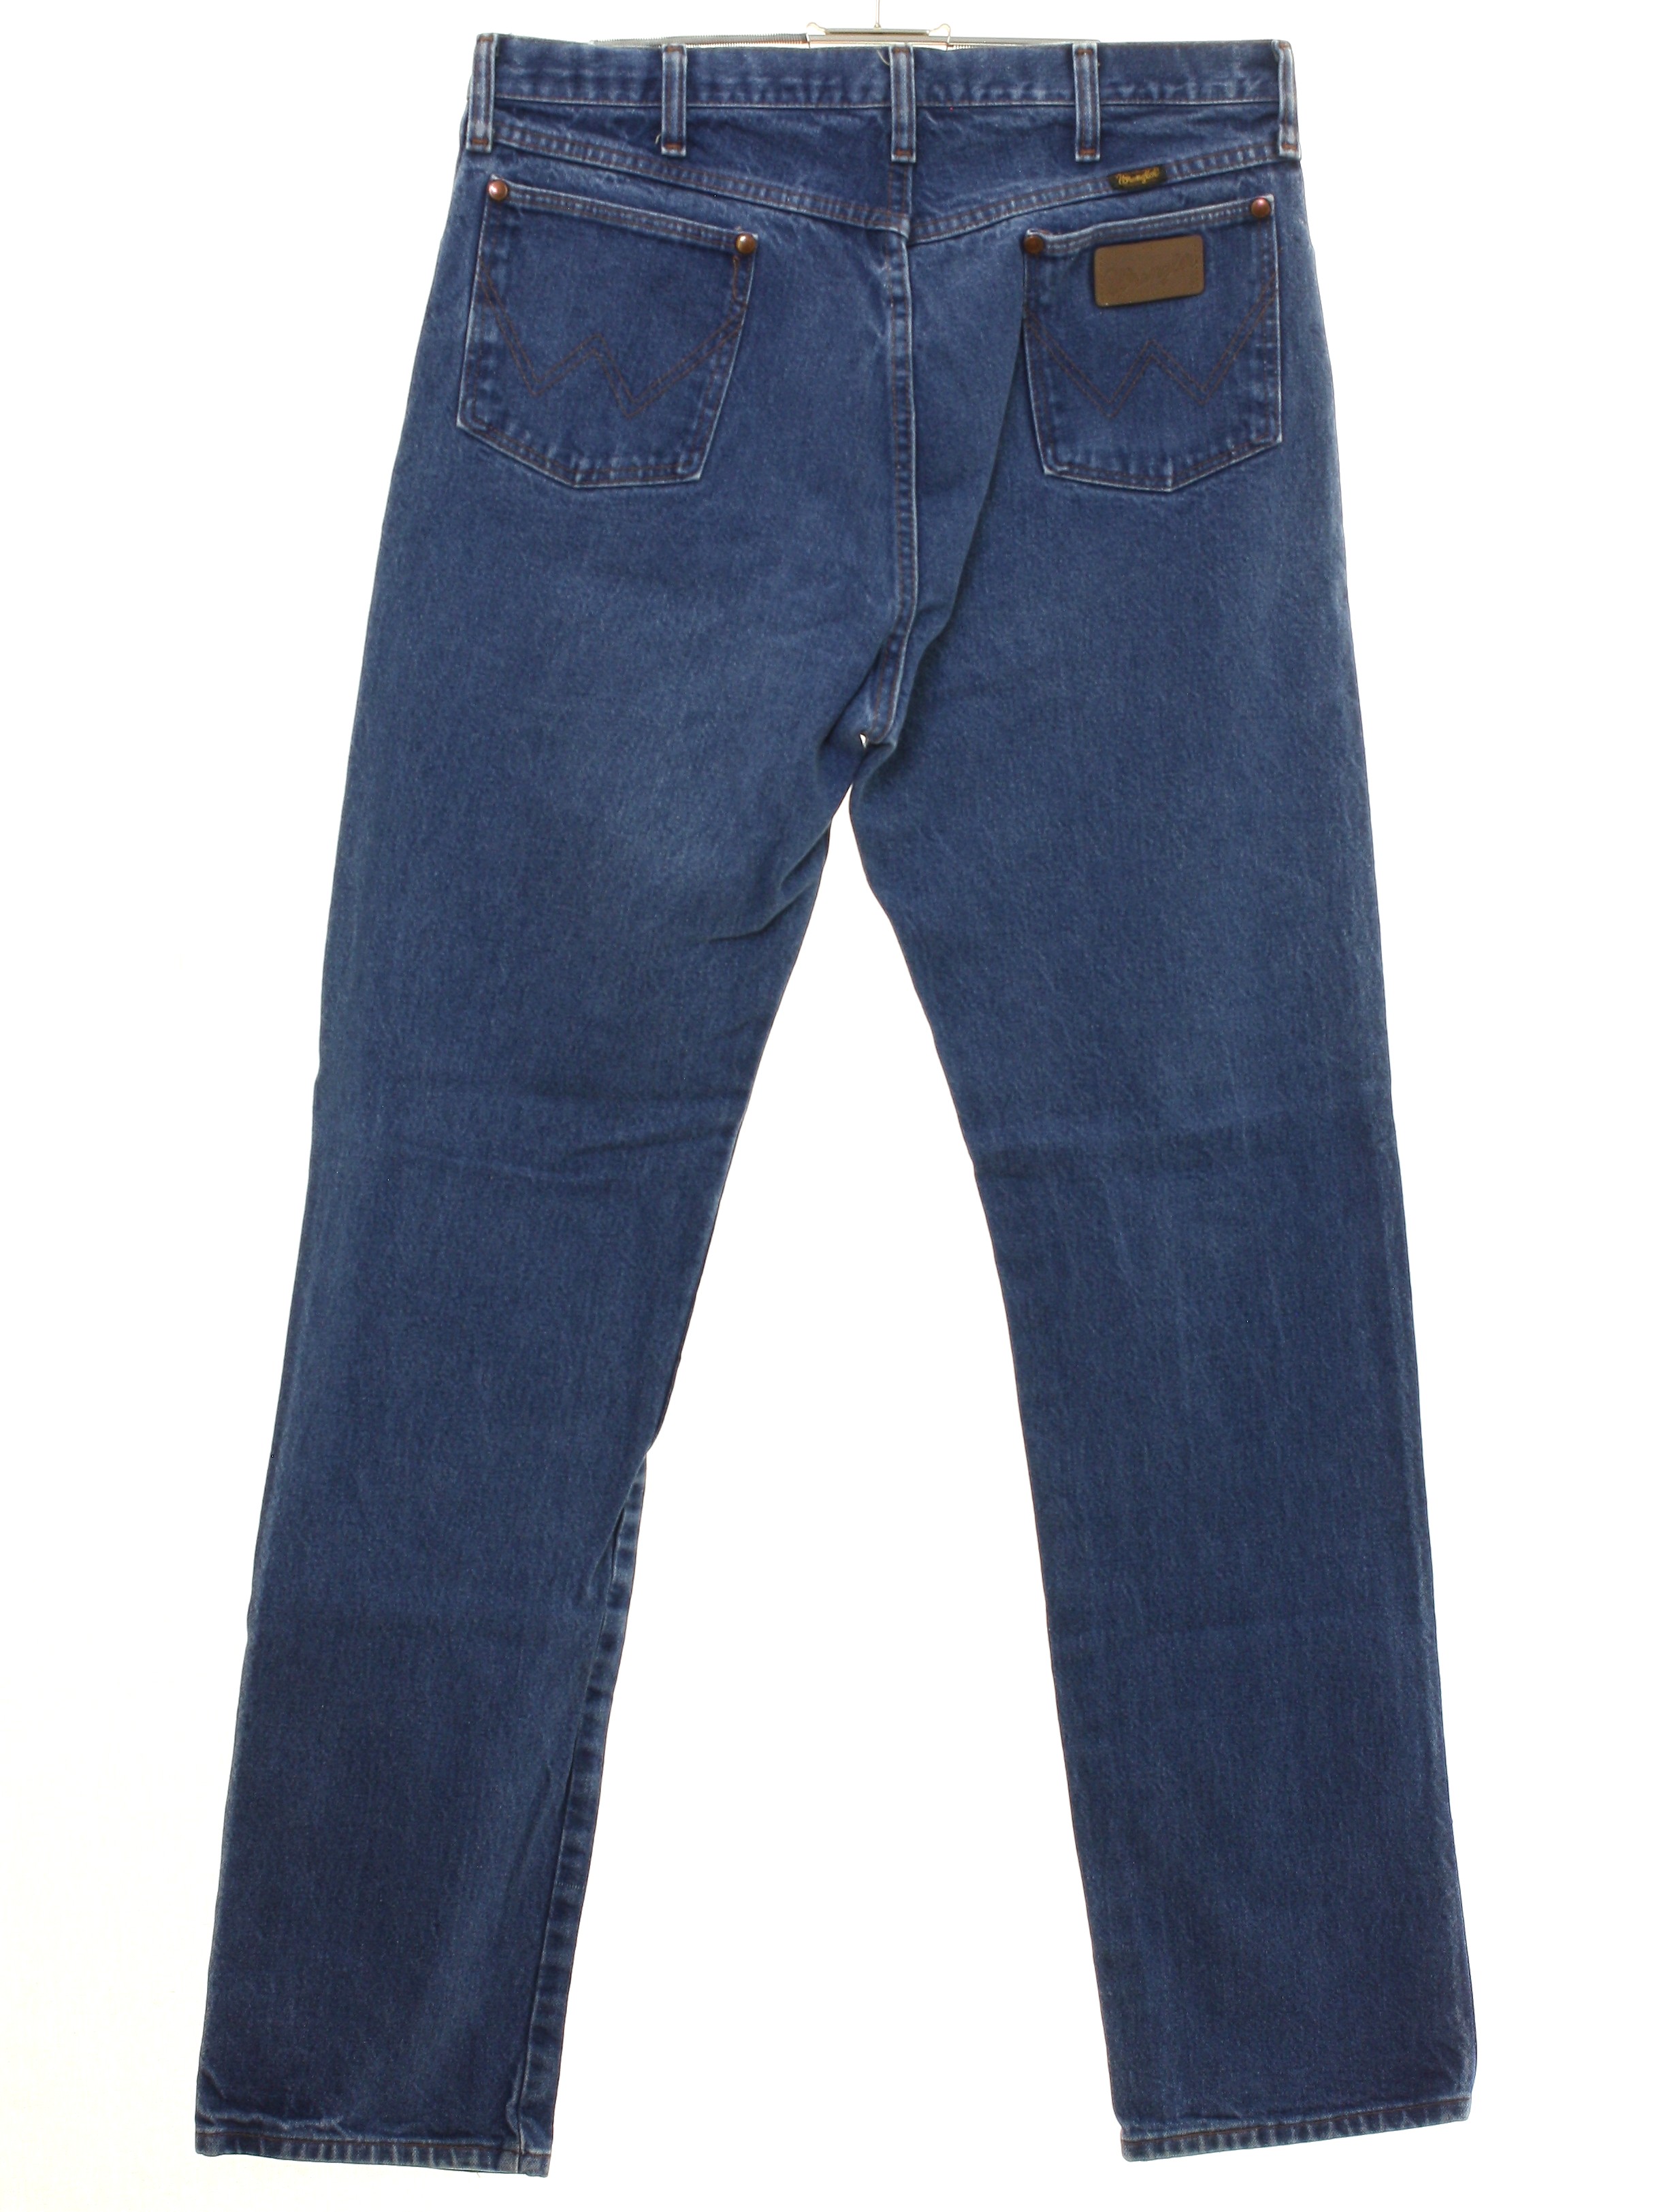 Retro 1990's Pants (Wrangler) : 90s -Wrangler- Mens slightly faded blue ...